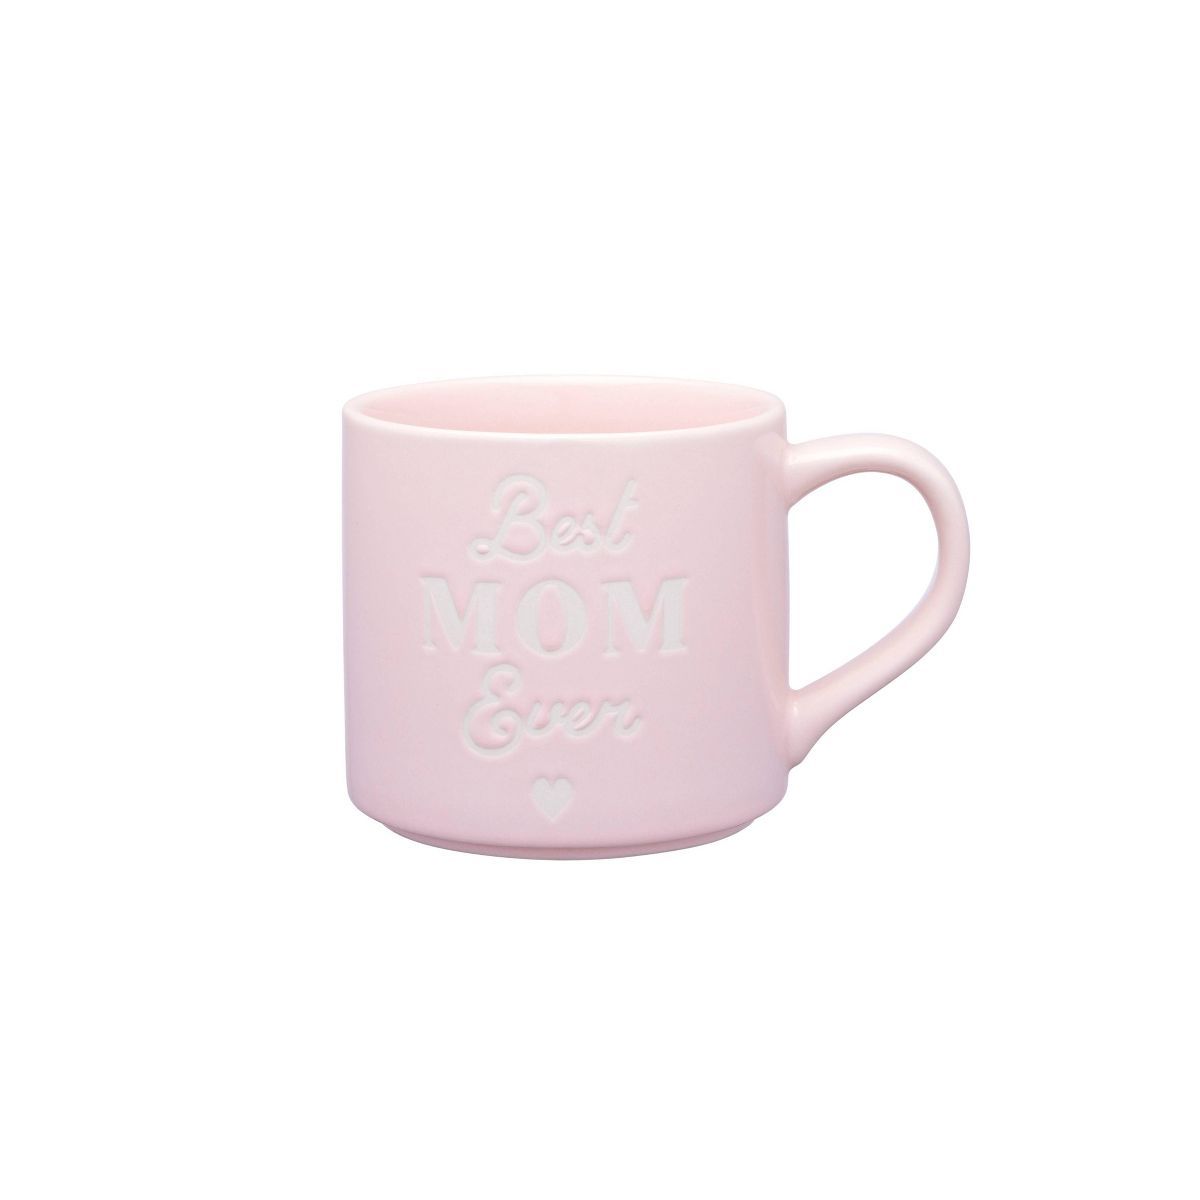 16oz Stoneware Best Mom Ever Mug Light Pink - Parker Lane | Target